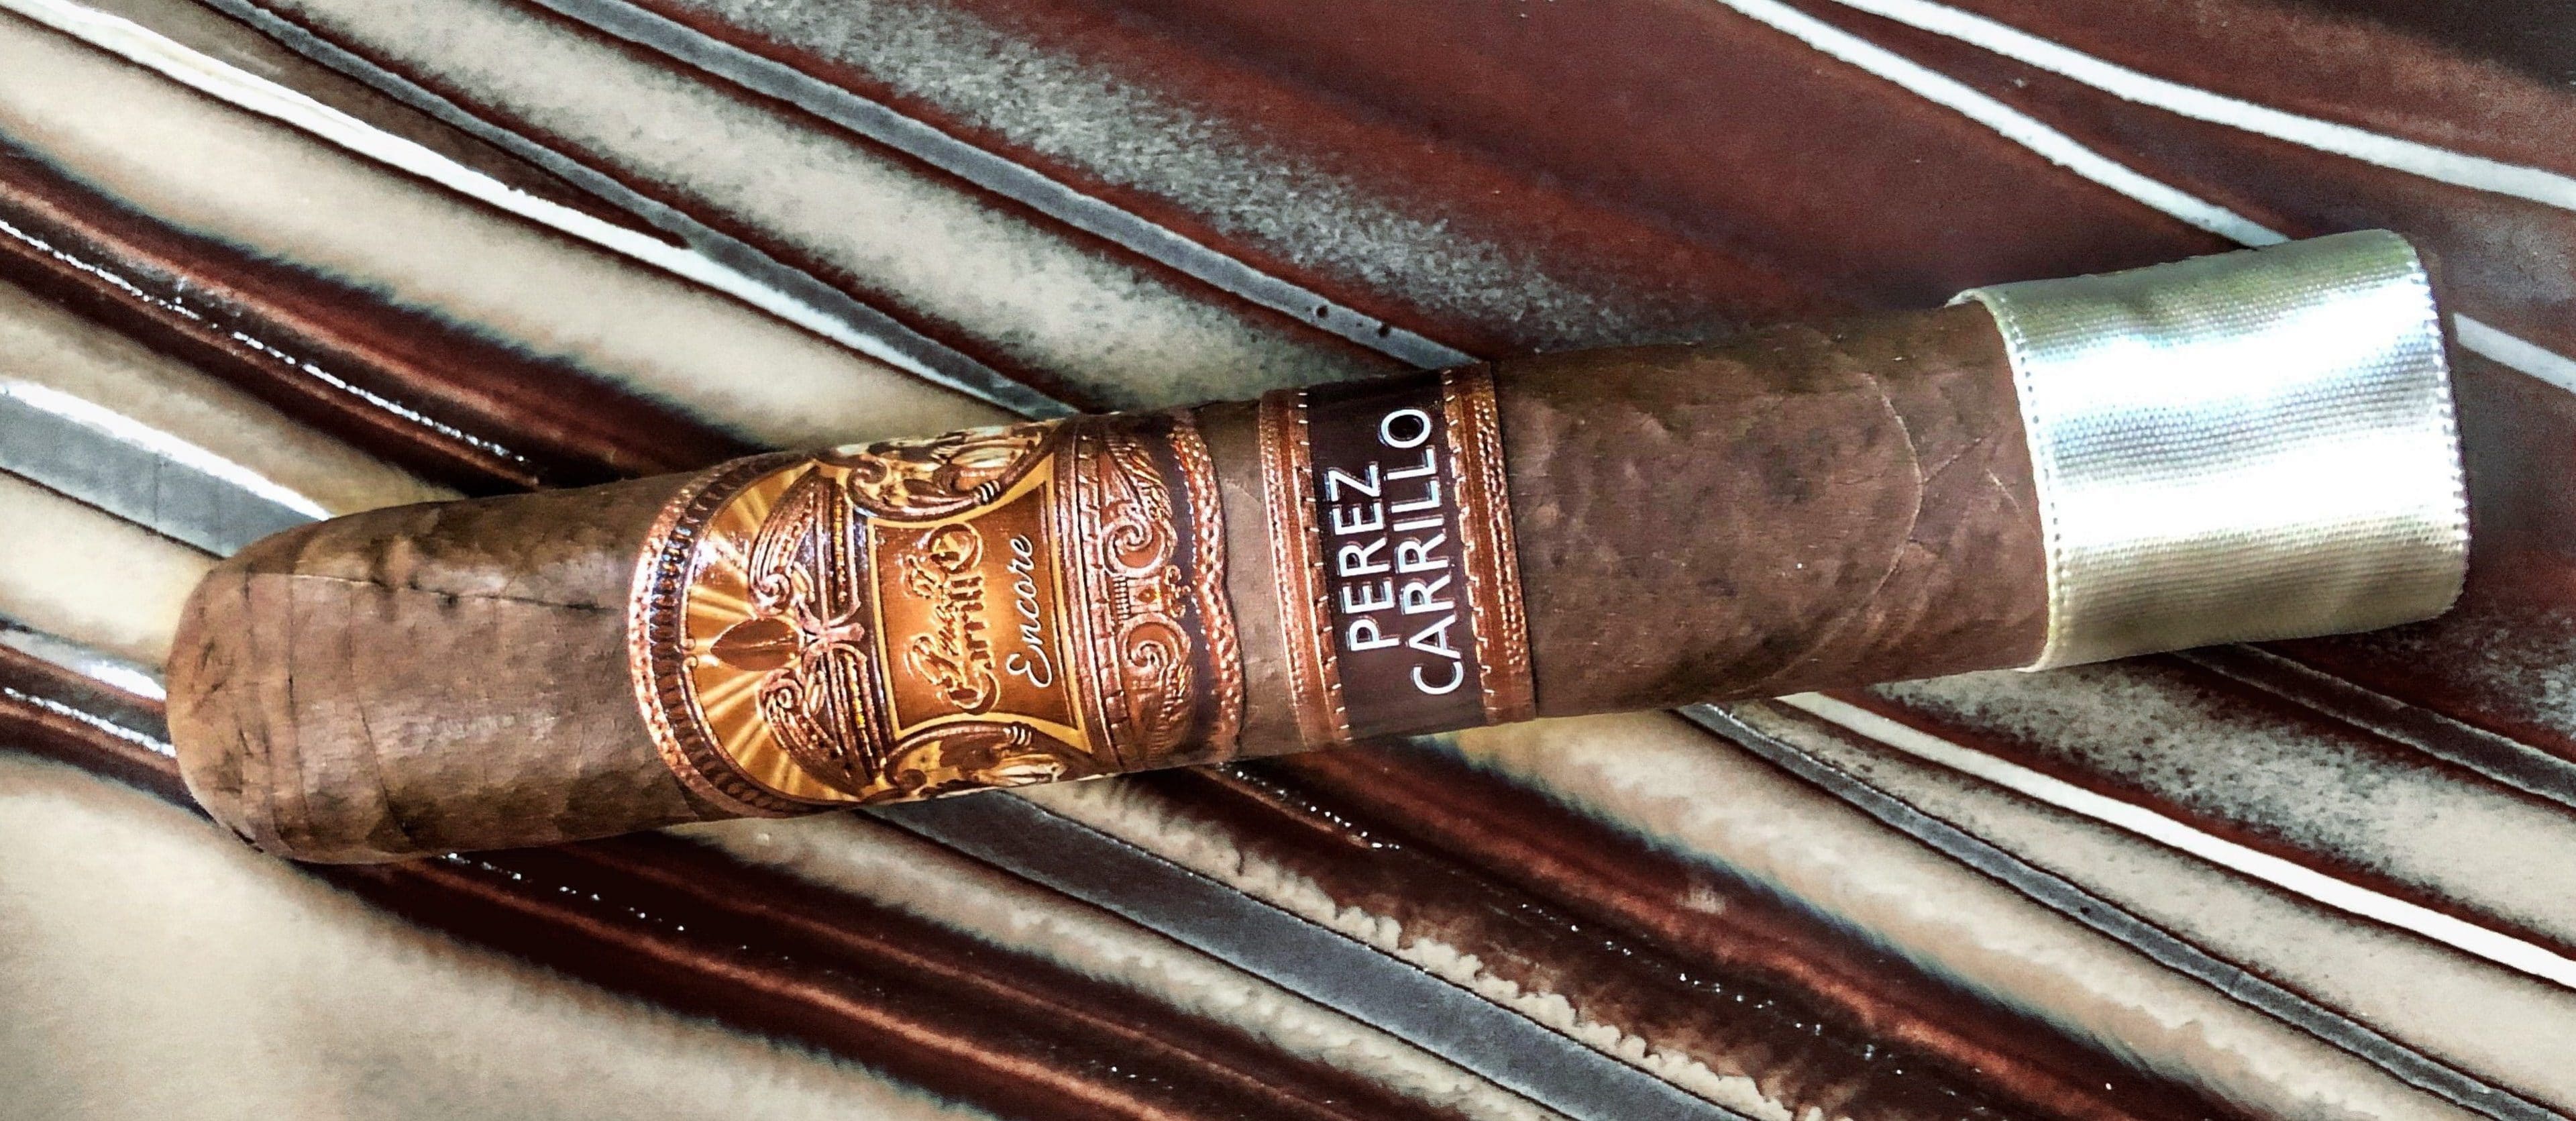 E.P. Carrillo Adds "El Futuro" to Encore Line - Cigar News